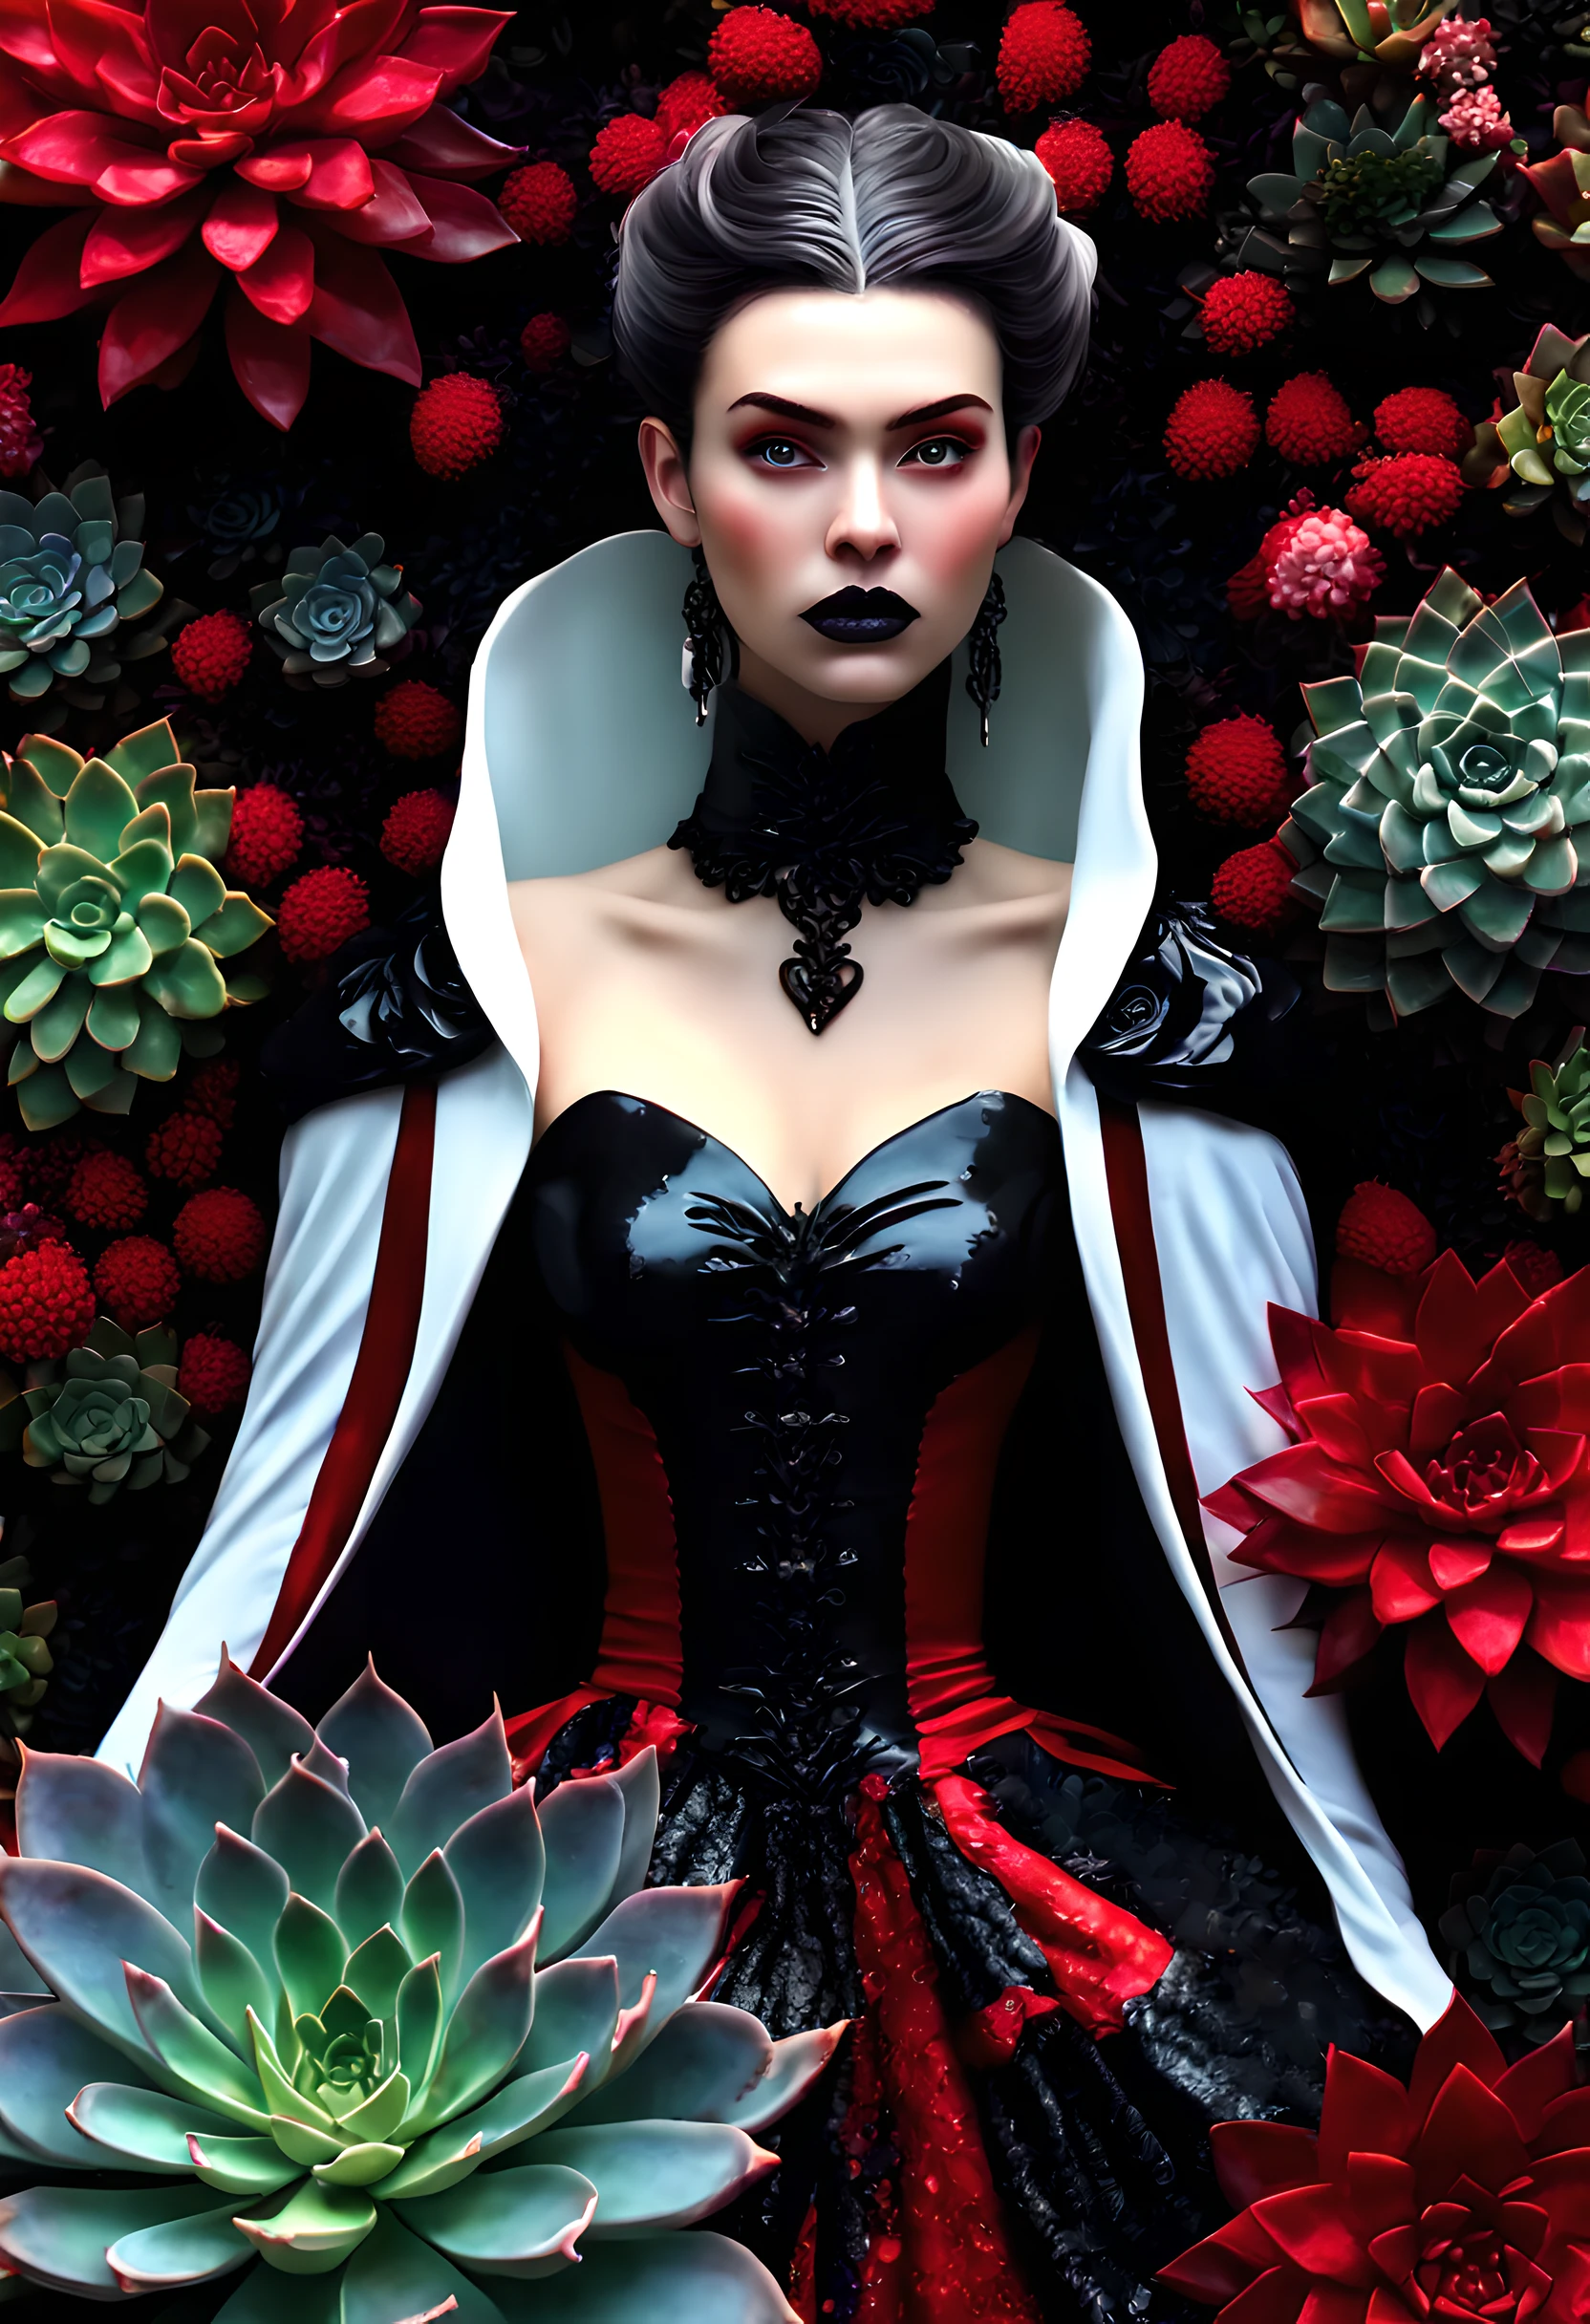 picture of a vampire woman 休息在 a (黑色的:1.2) 和 (紅色的:1.2) colo紅色的 succulents meadow, 全身, 一個精緻美麗的 (超詳細, 傑作, 最好的品質: 1.4) 女 吸血鬼 女人, 動態角度 (最好詳細, 傑作, 最好的品質), 超詳細 face (超詳細, 傑作, 最好的品質), 超女性化, 灰色皮膚, 金髮, 捲髮, 動態眼睛顏色, 冷眼, 發光的眼睛, 眼神銳利, dark 紅色的 lips, [獠牙], 穿著白色連身裙, 優雅風格連身裙 (超詳細, 傑作, 最好的品質), 穿著藍色斗篷 (超詳細, 傑作, 最好的品質), 長斗篷, 飄逸斗篷 (超詳細, 傑作, 最好的品質), 穿著高跟靴, 休息在 (黑色的 和 紅色的 colo紅色的 succulents meadow: 1.6), 滴血的多肉植物, full colo紅色的, (完美的光譜: 1.3),( 充滿活力的工作: 1.4) vibrant shades of 紅色的, 和 黑色的) 月亮升起, 月光, 現在是晚上, 高細節, 幻想藝術, RPG art 最好的品質, 16k, [超詳細], 傑作, 最好的品質, (超詳細), 全身, 超廣角鏡頭, 逼真的, 激戰